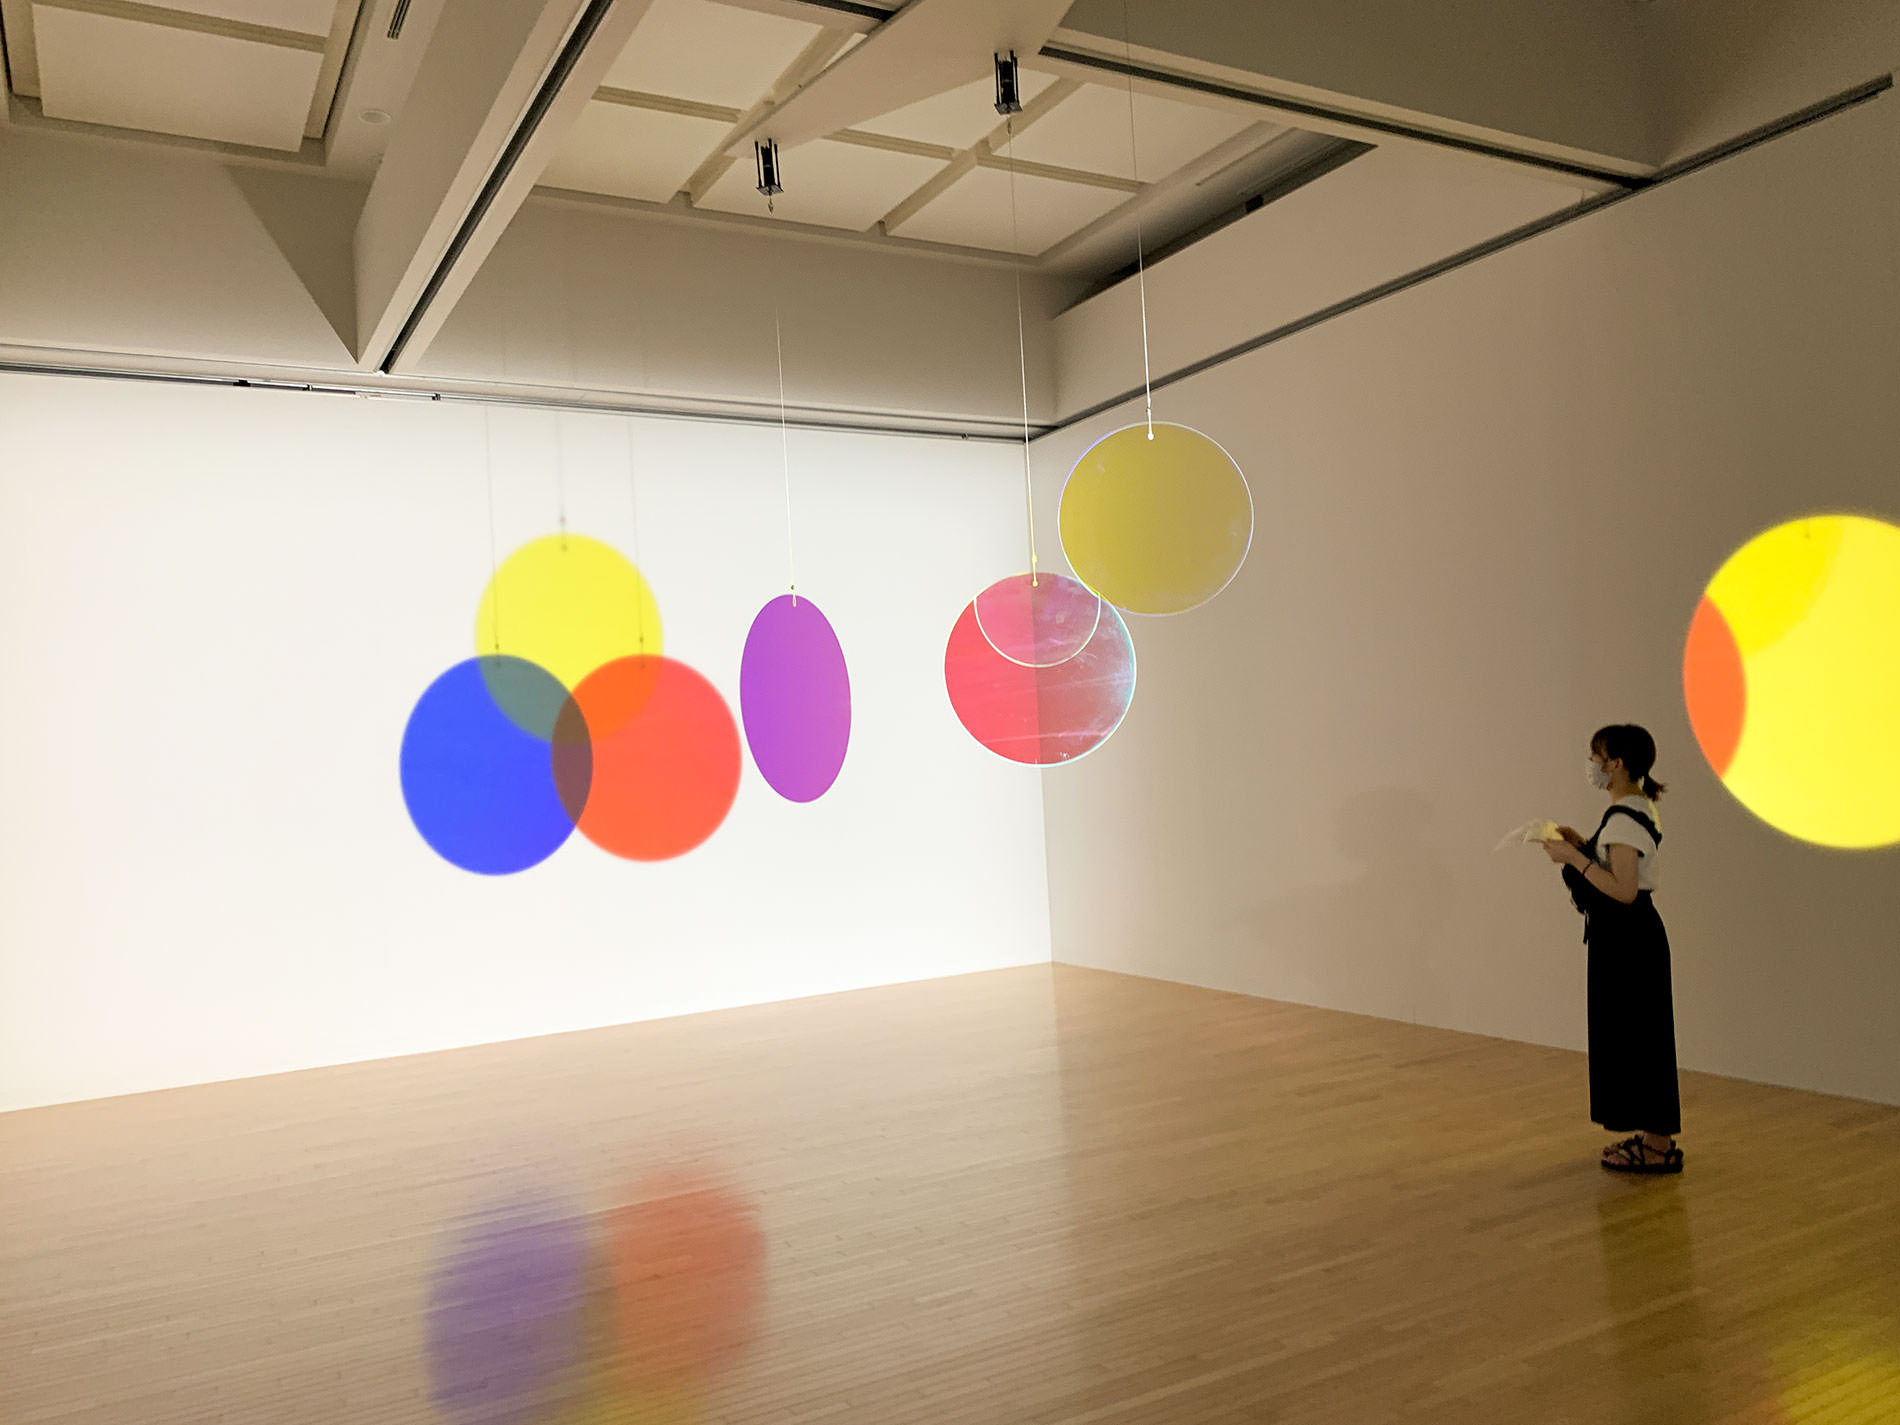 オラファー・エリアソン 「ときに川は橋となる」展 | 東京都現代美術館 / Olafur Eliasson | MUSEUM OF CONTEMPORARY ART TOKYO 2020